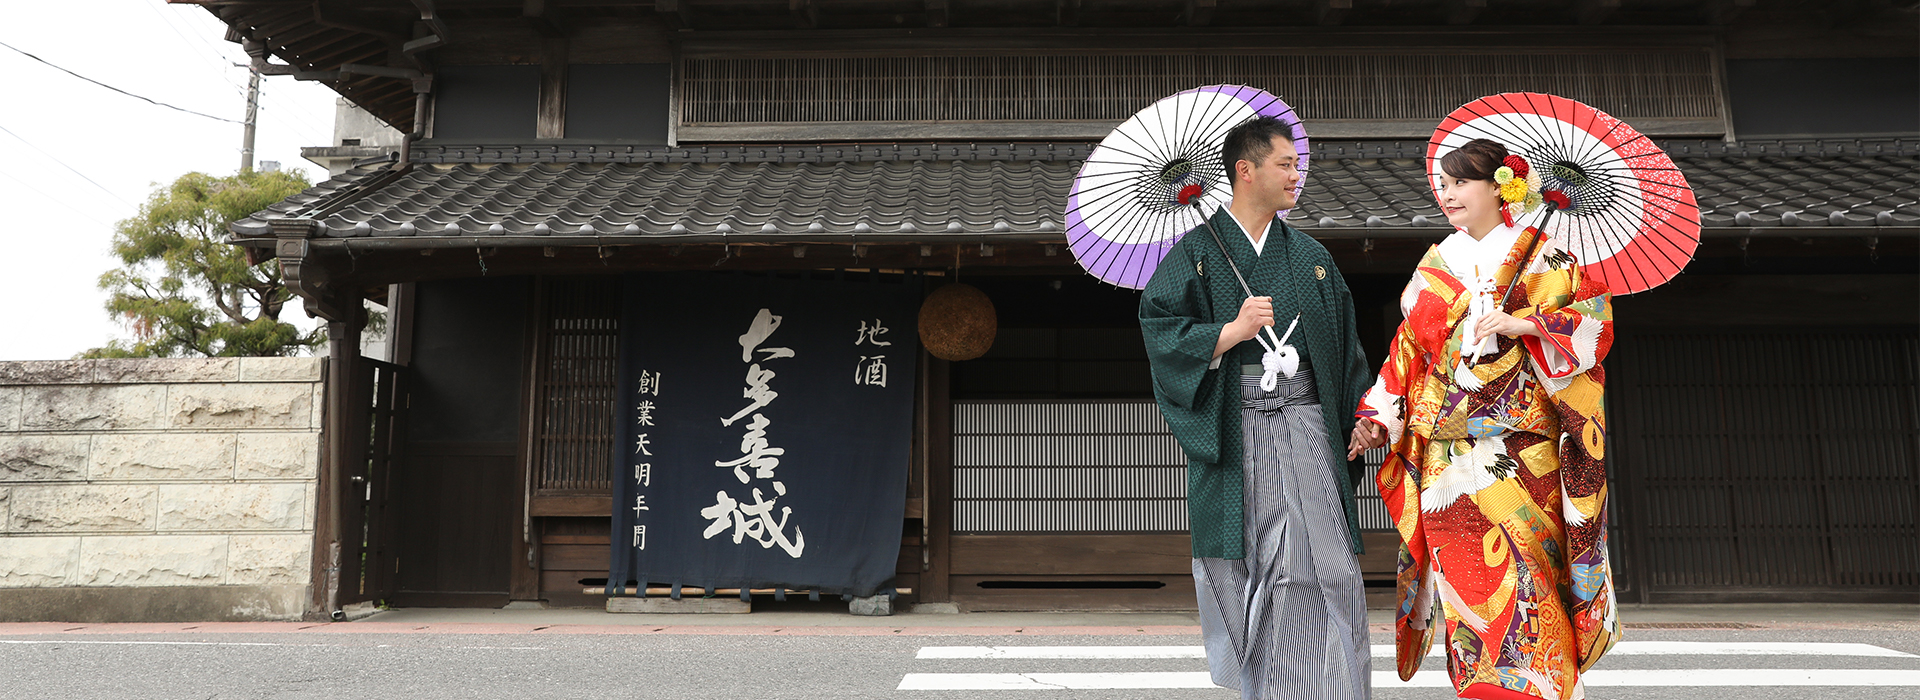 花嫁衣装レンタル | 成人式の振袖選び、レンタル振袖は、千葉県の振袖